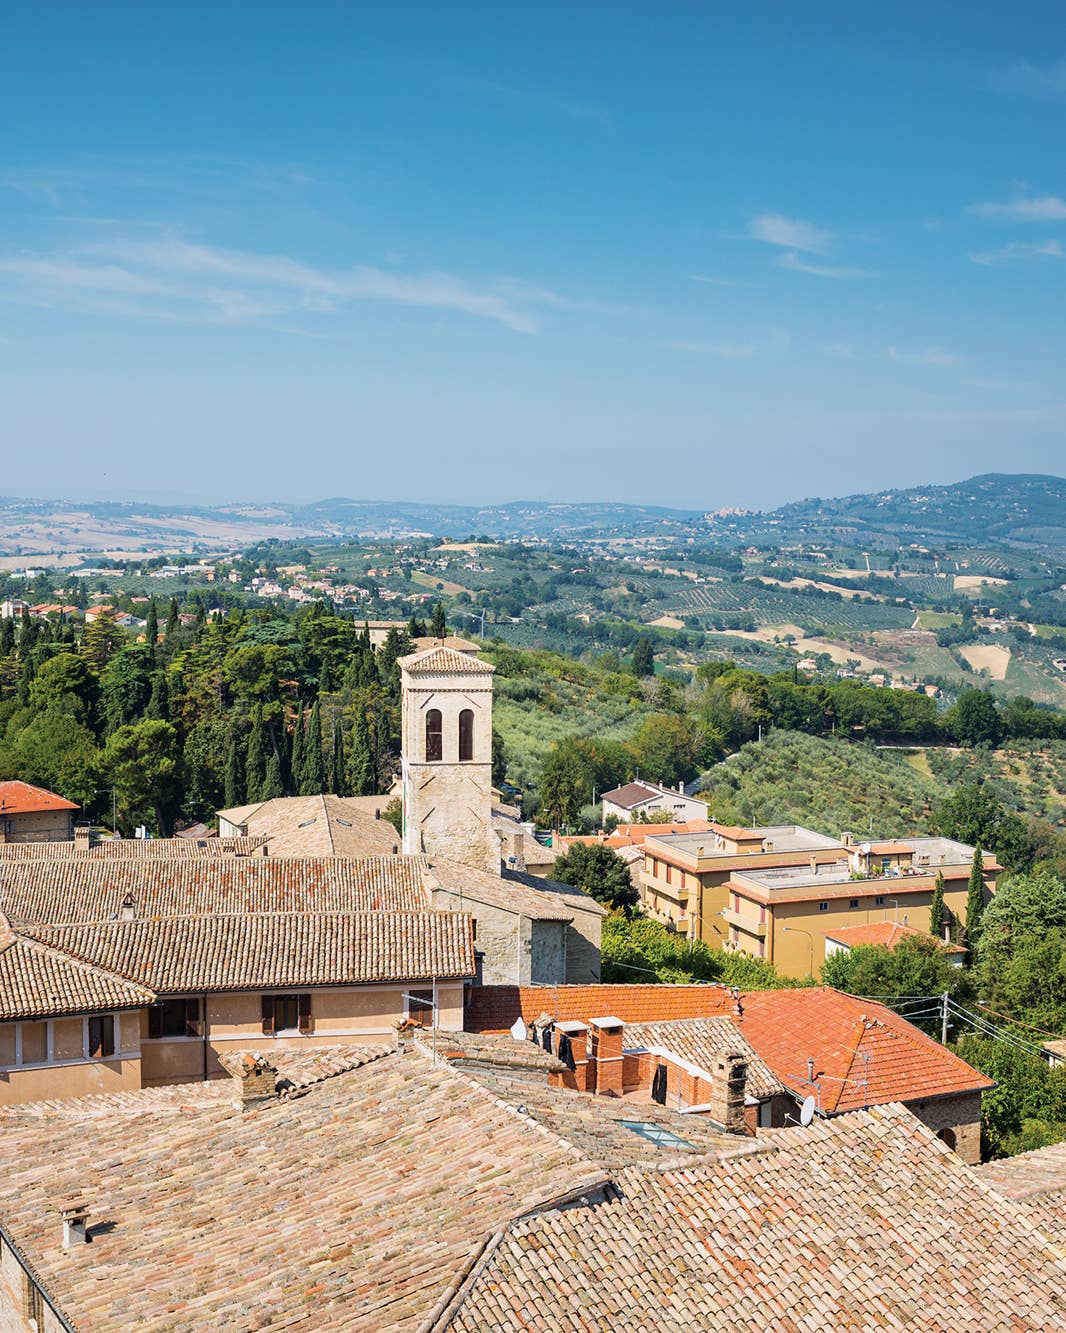 Travel Guide: Umbria